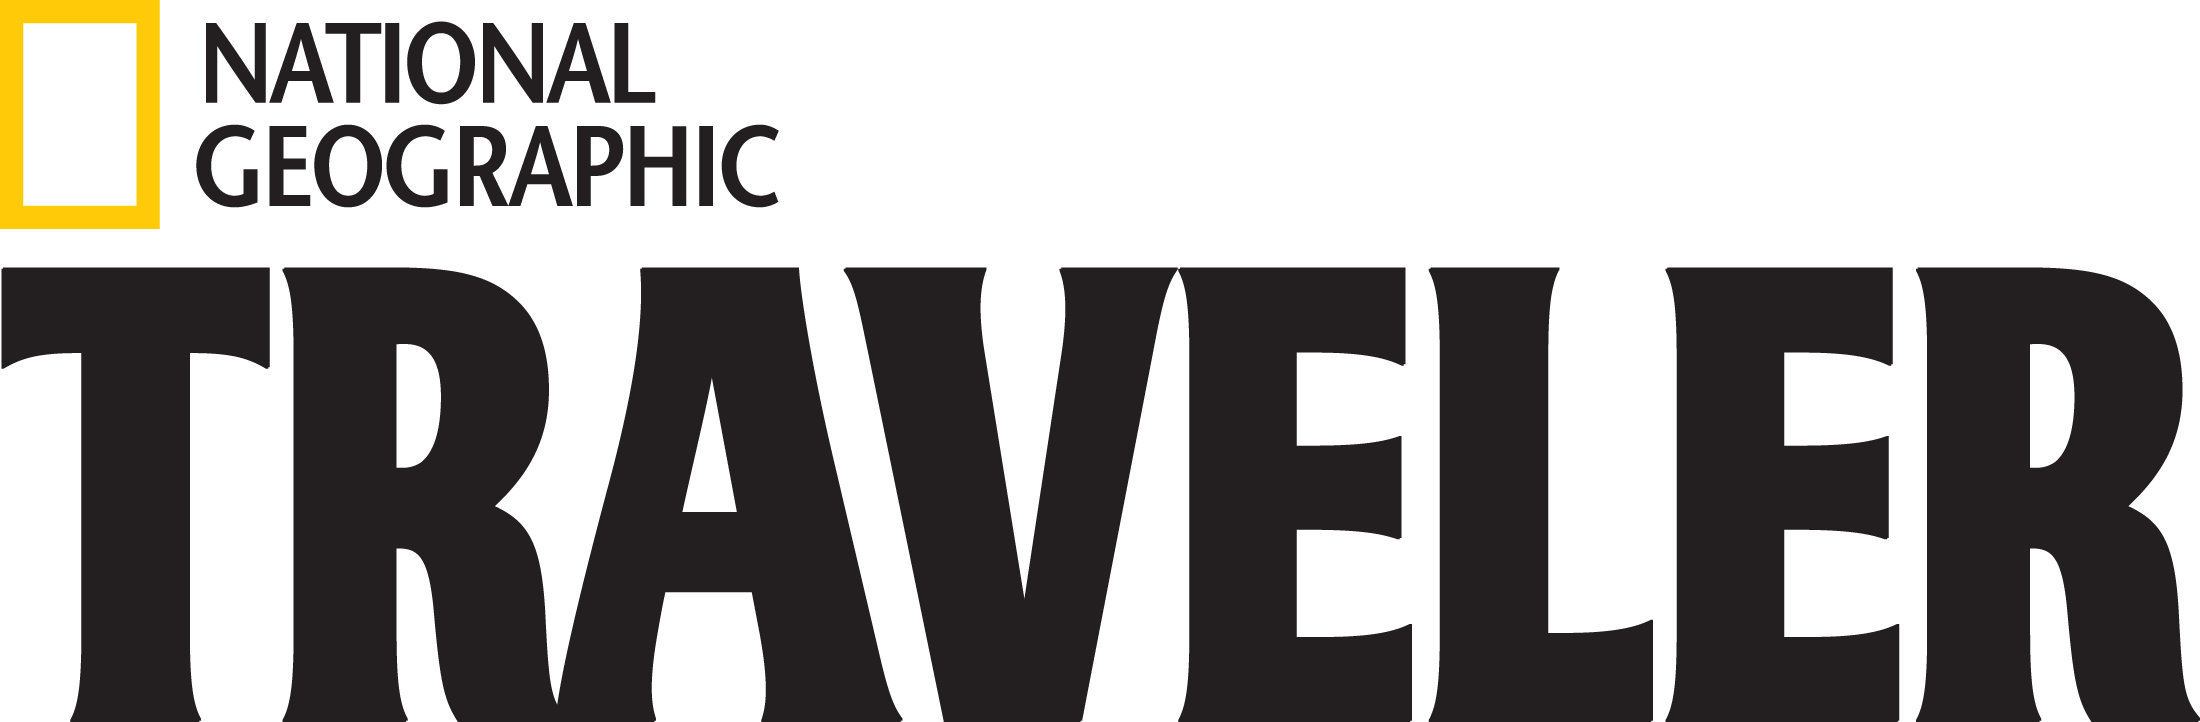 traveller logo